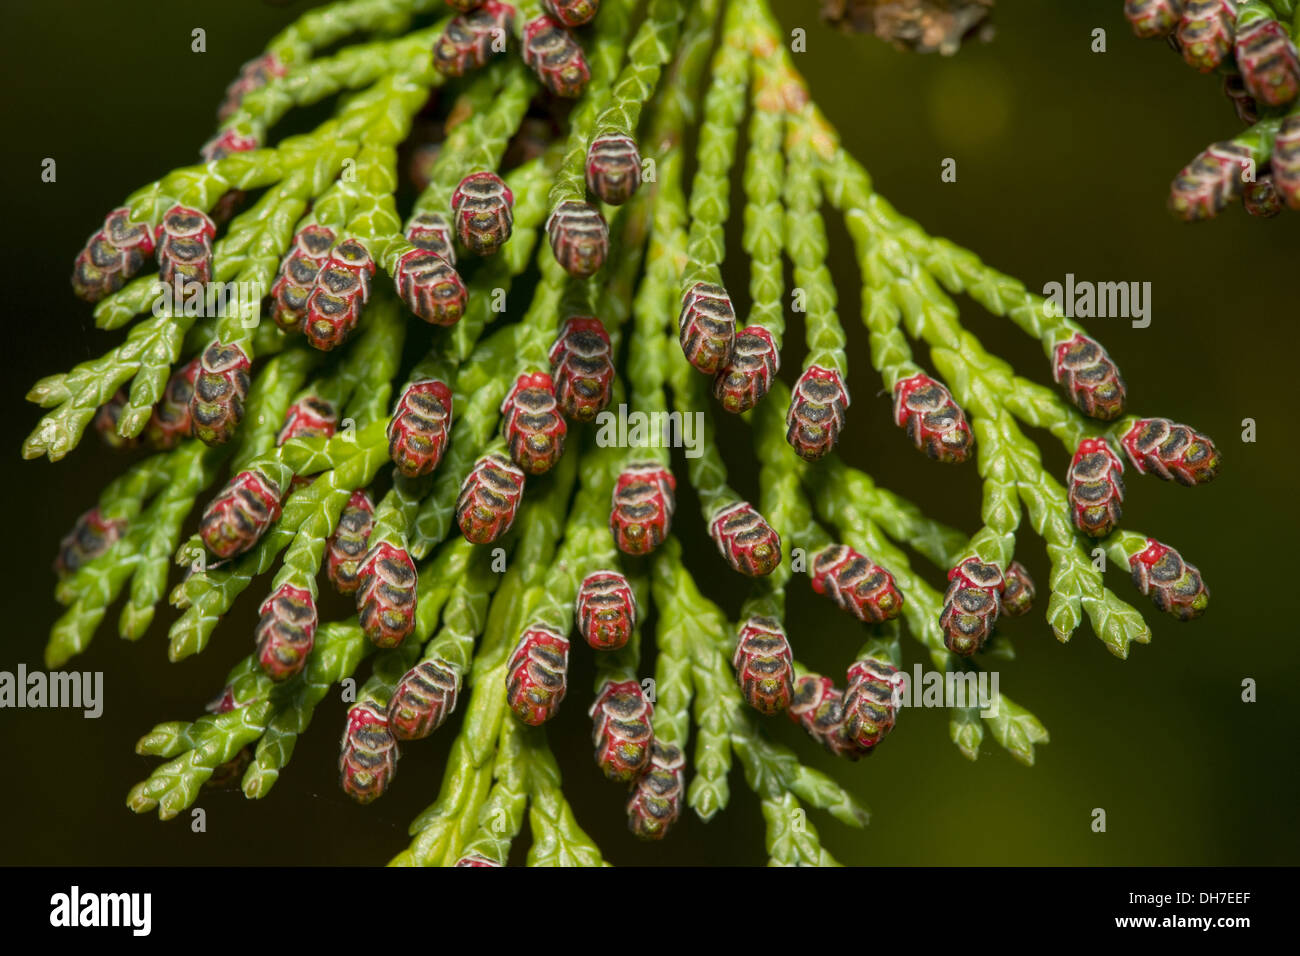 lawsons cypress, chamaecyparis lawsoniana Stock Photo